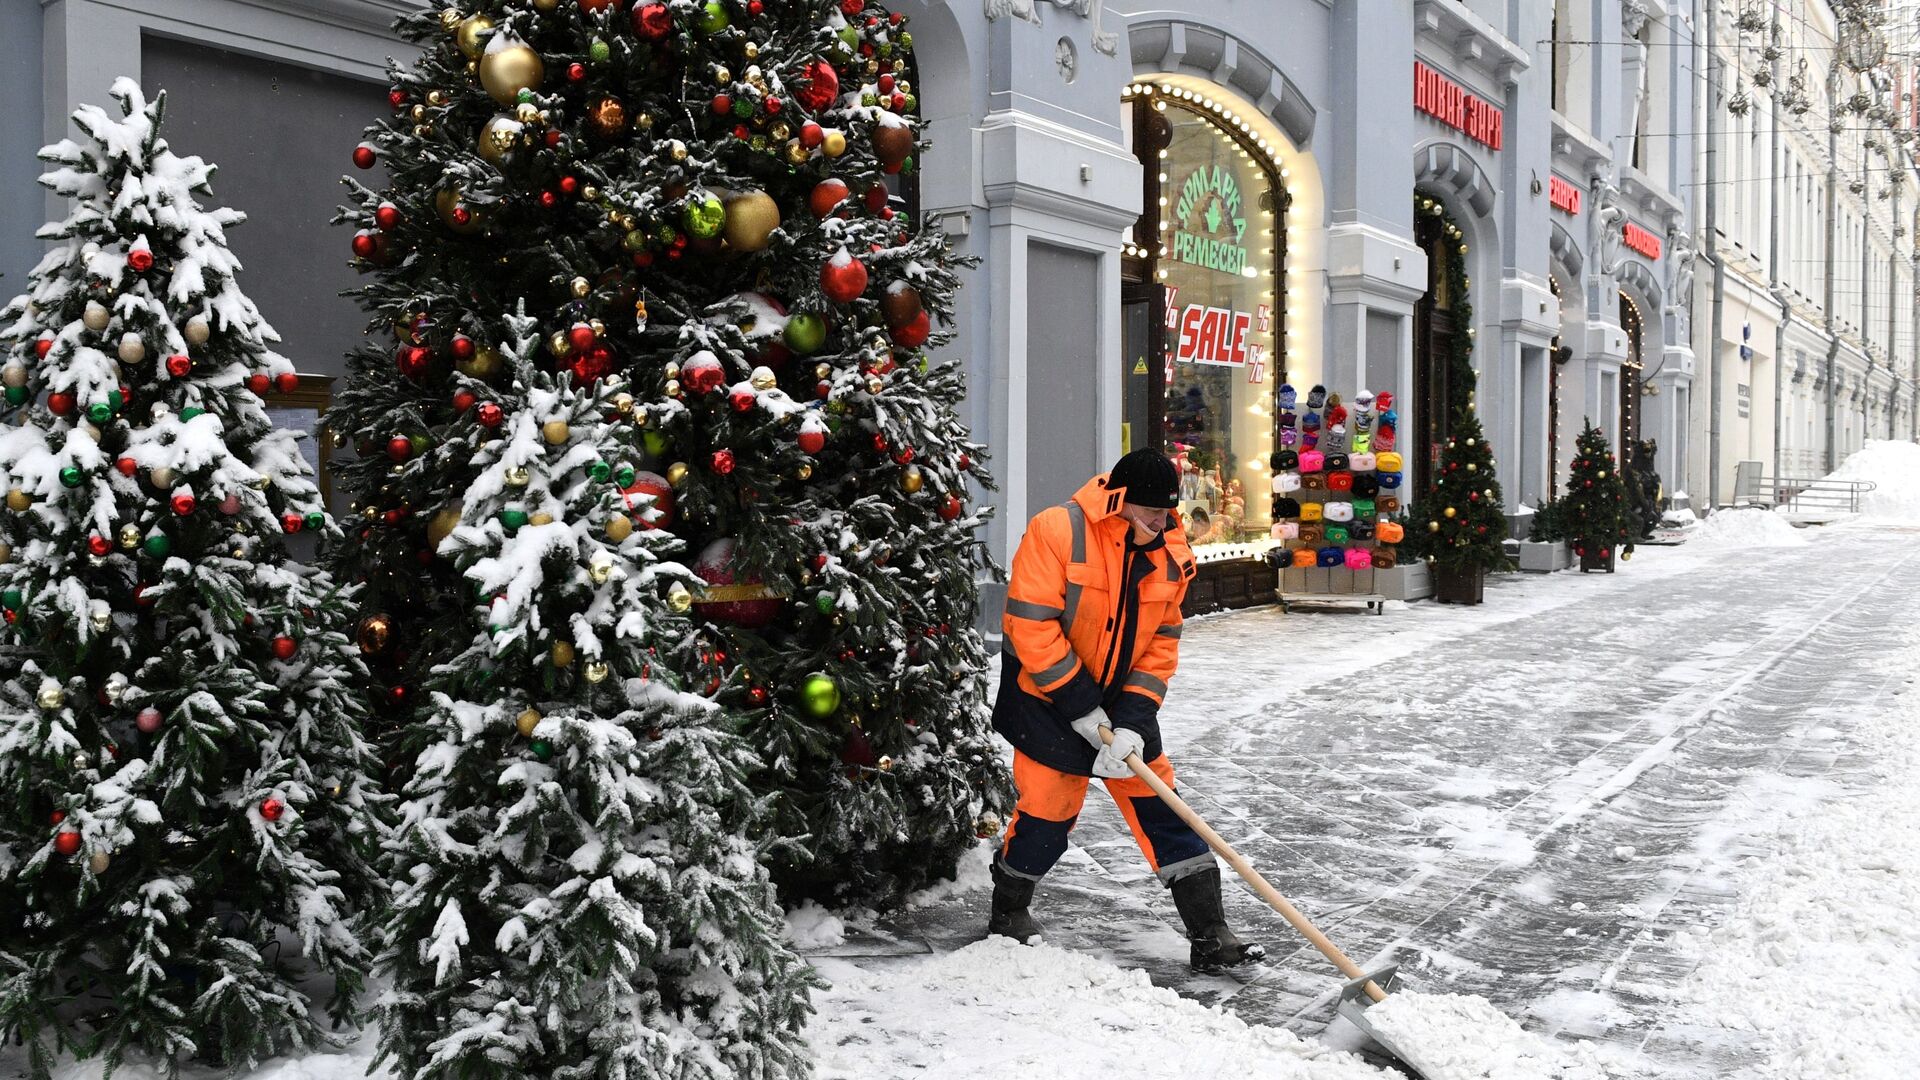 Сотрудник коммунальных услуг убирает снег на улице Москвы - Sputnik Таджикистан, 1920, 05.12.2021